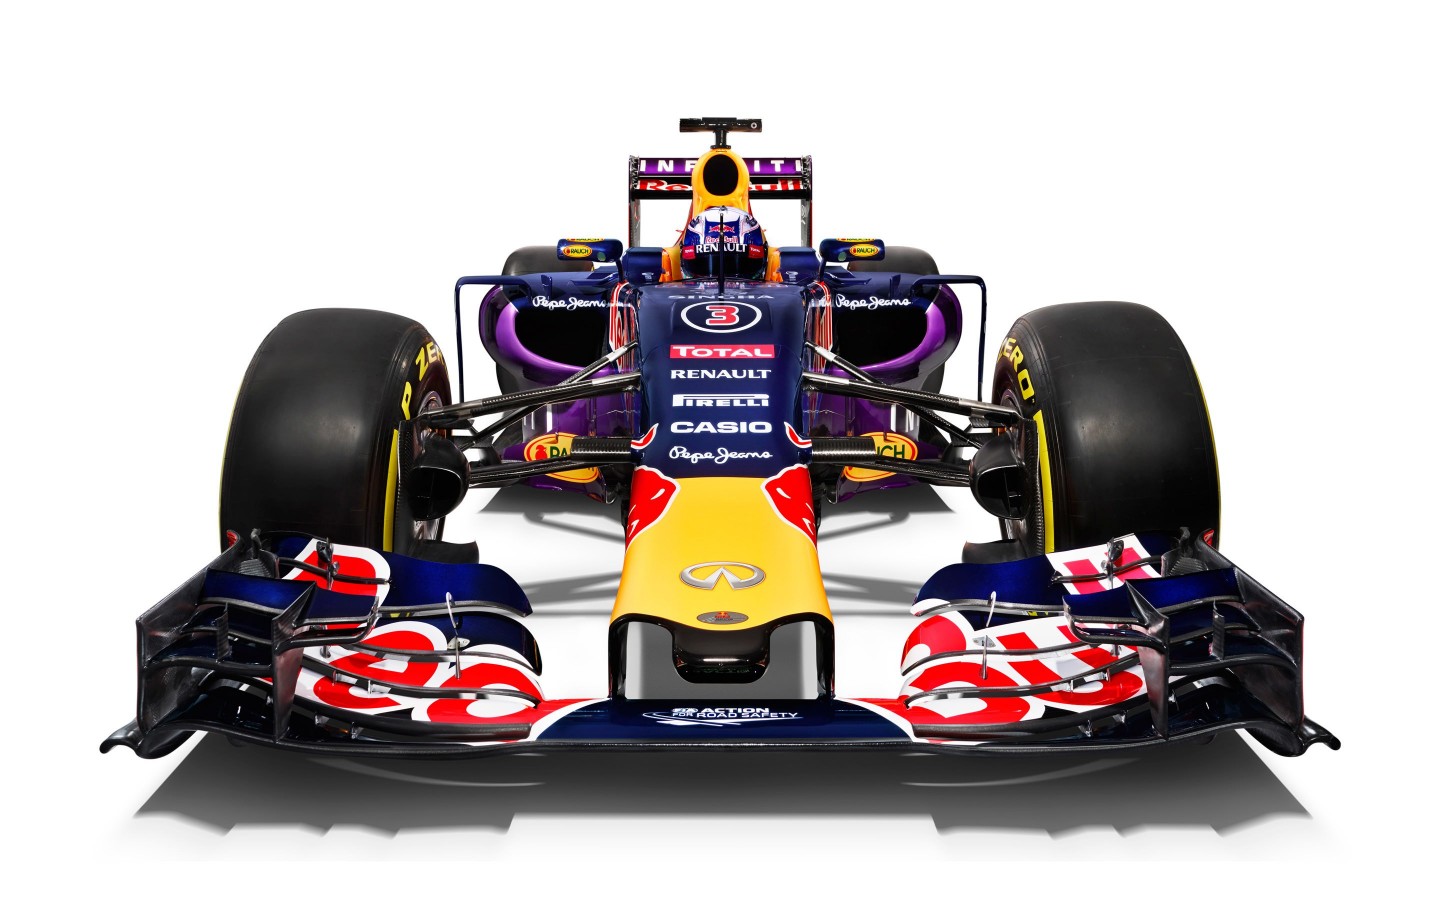 Infiniti Red Bull Racing RB11 2015 Formula 1 Car Wallpaper for Desktop 1440x900